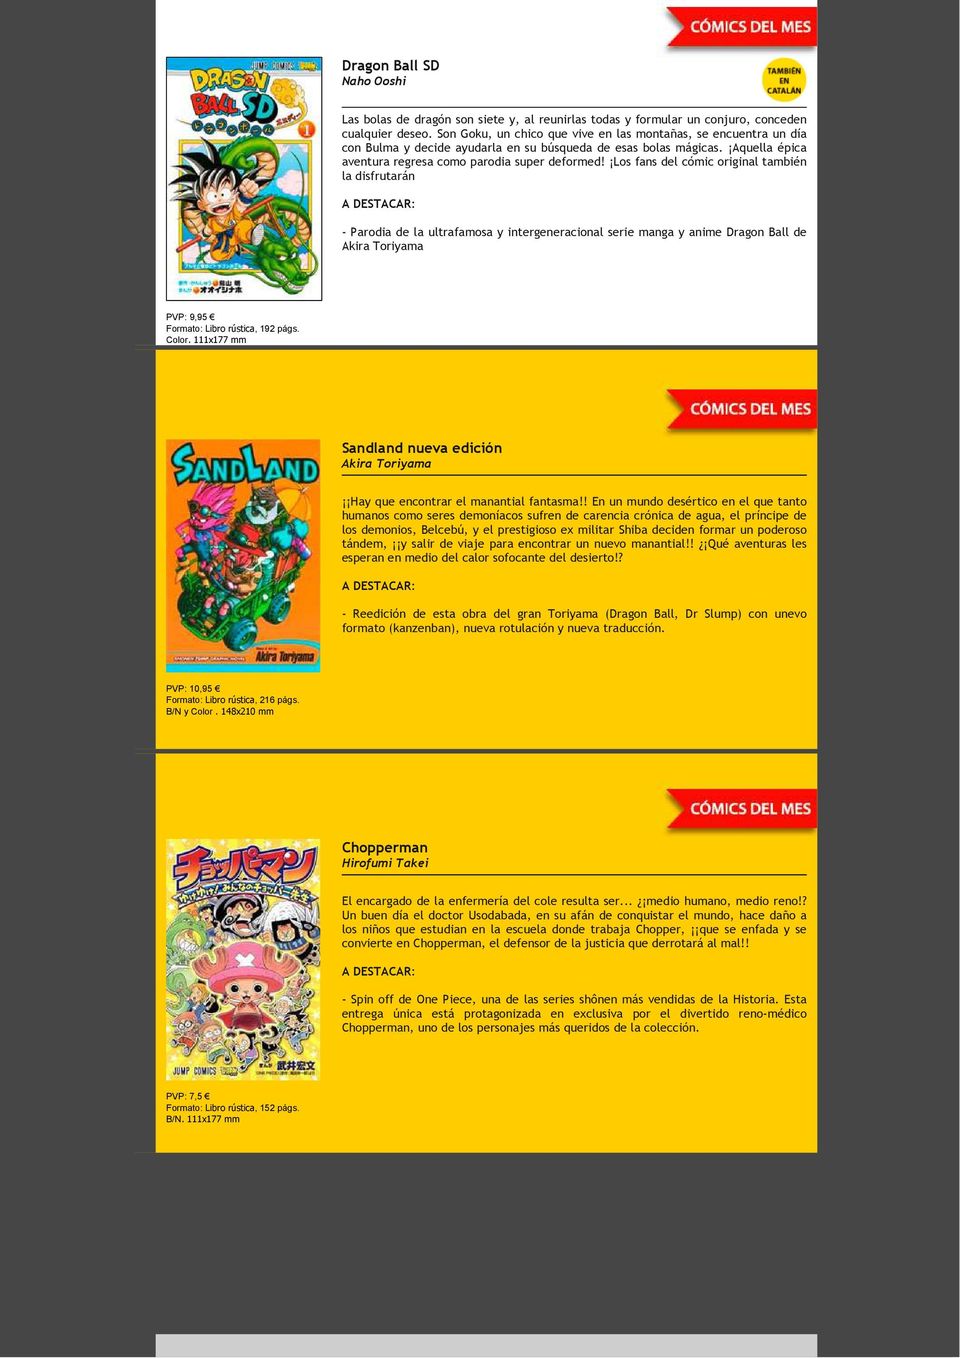 Los fans del cómic original también la disfrutarán - Parodia de la ultrafamosa y intergeneracional serie manga y anime Dragon Ball de PVP: 9,95 Formato: Libro rústica, 192 págs. Color.